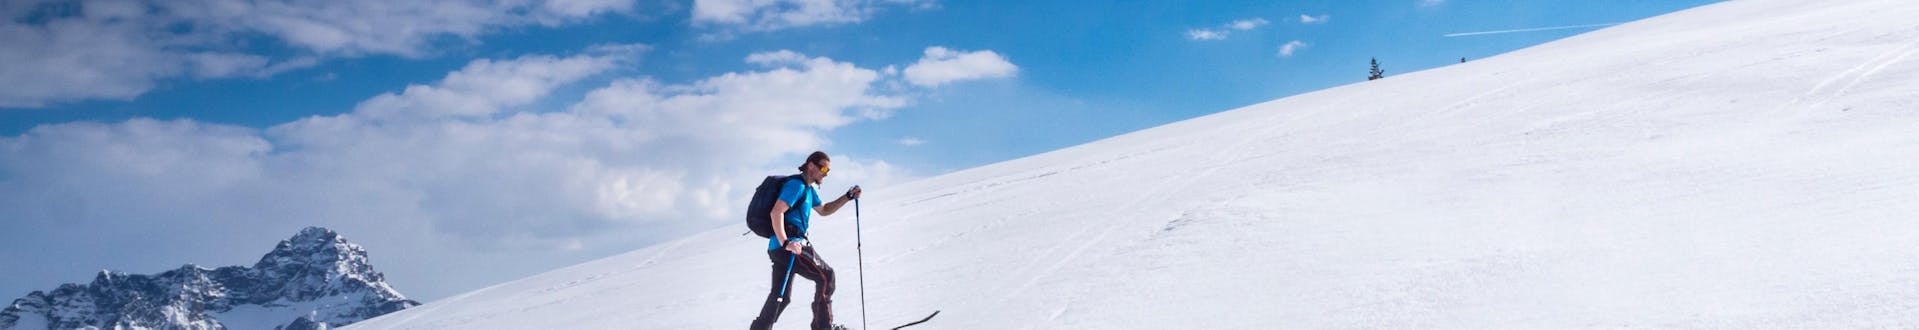 Skitourer die op een zonnige dag in Riezlern, Oostenrijk, de helling op klimt.